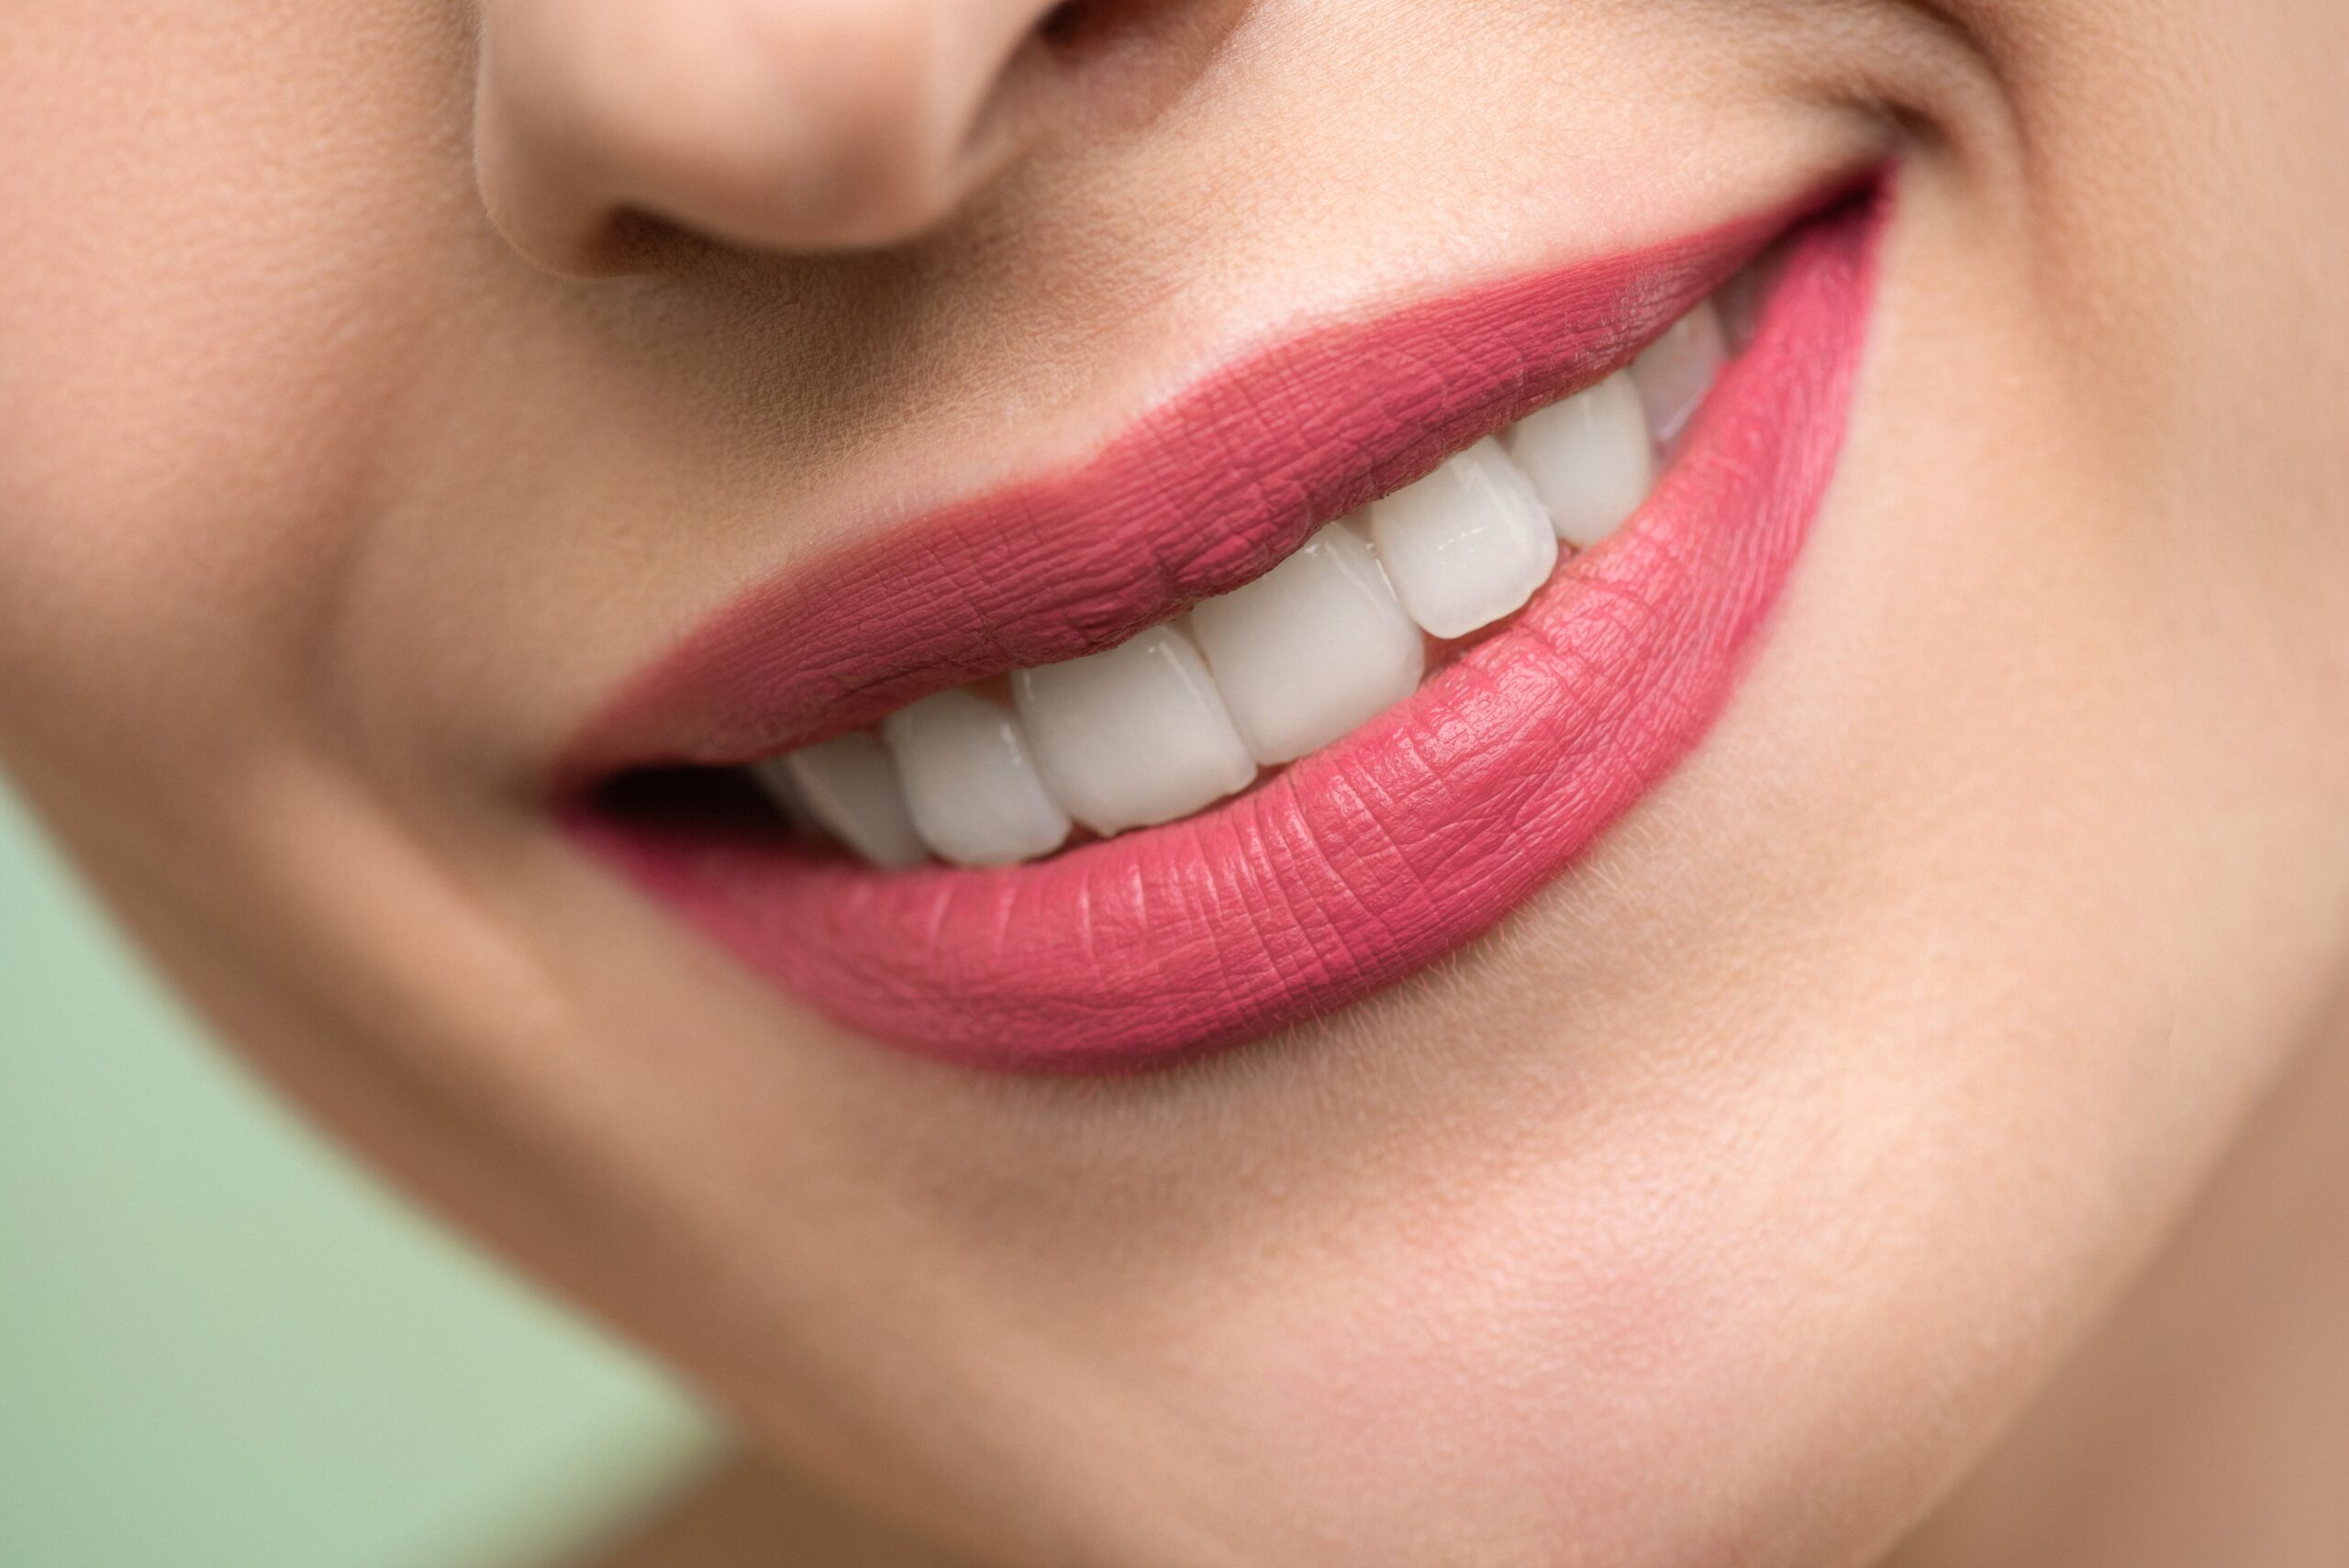 Regeneracja błony śluzowej jamy ustnej – klucz do zdrowia jamy ustnej